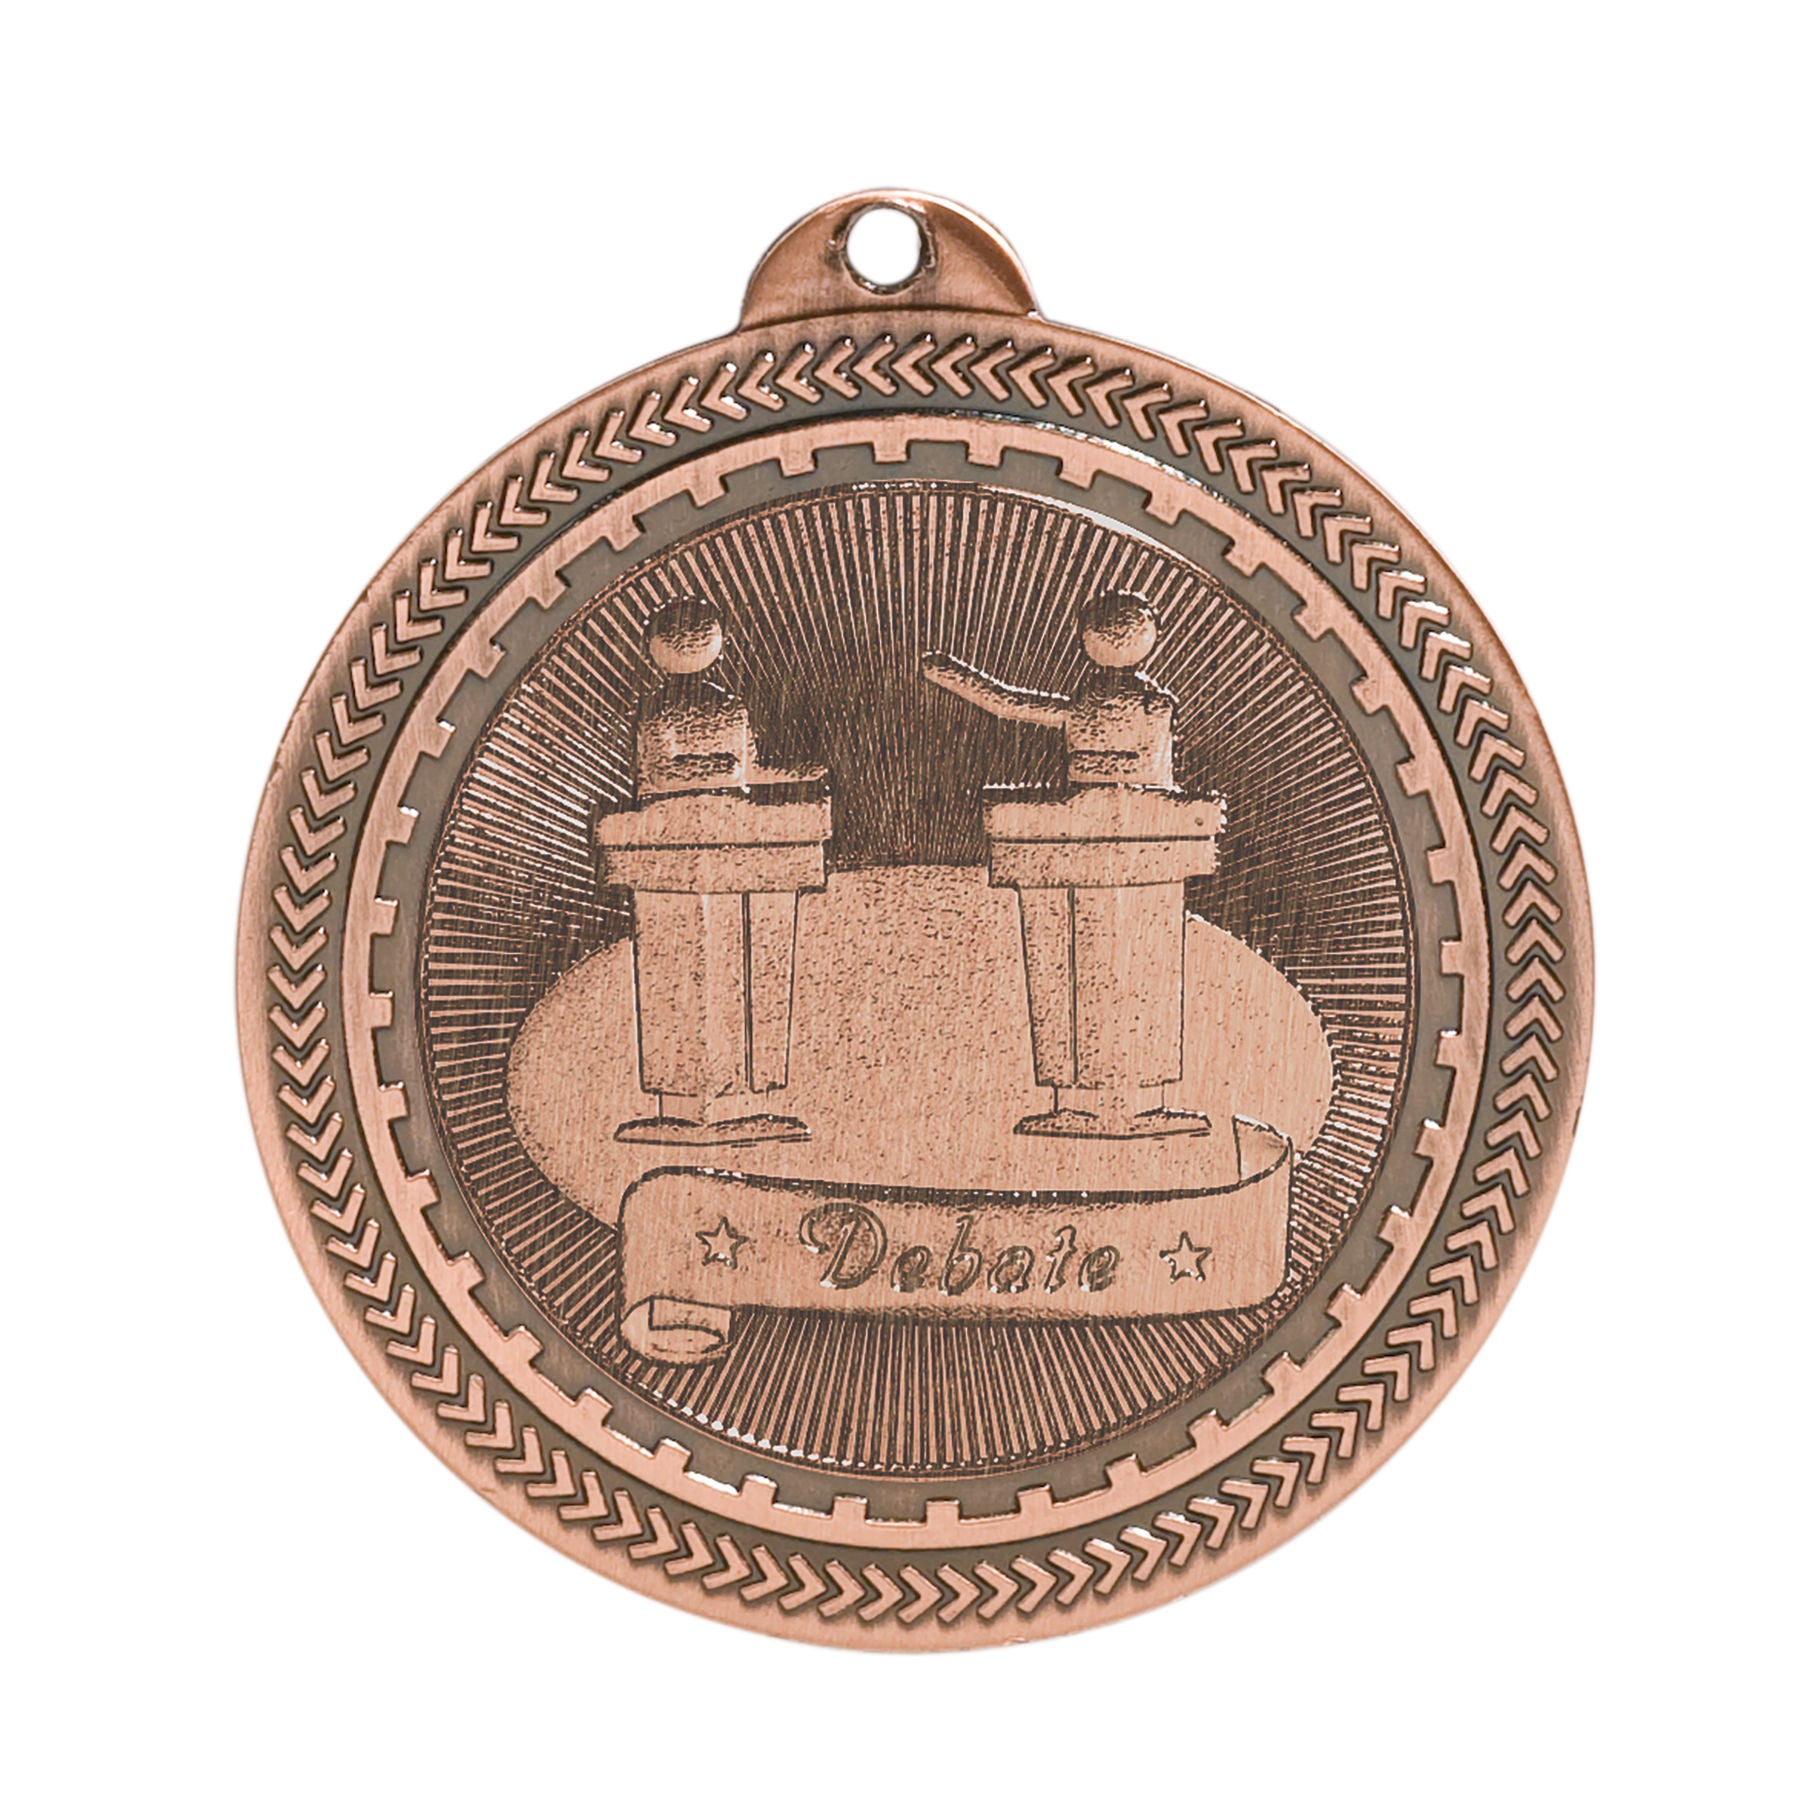 Debate Laserable BriteLazer Medal, 2" - Craftworks NW, LLC